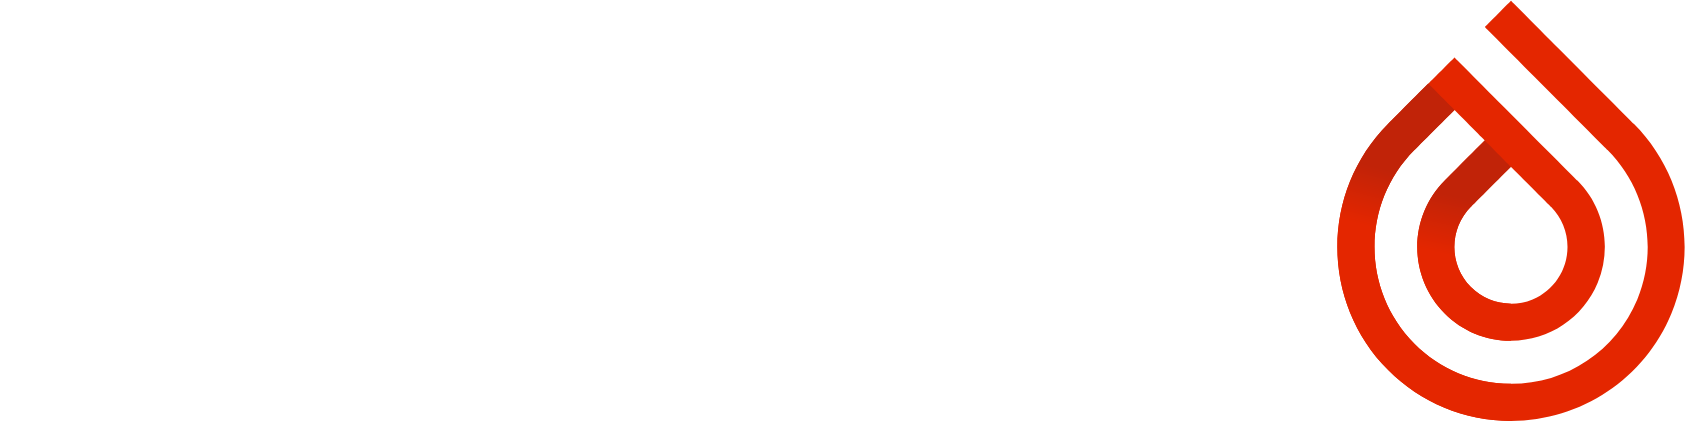 Cerus logo large for dark backgrounds (transparent PNG)